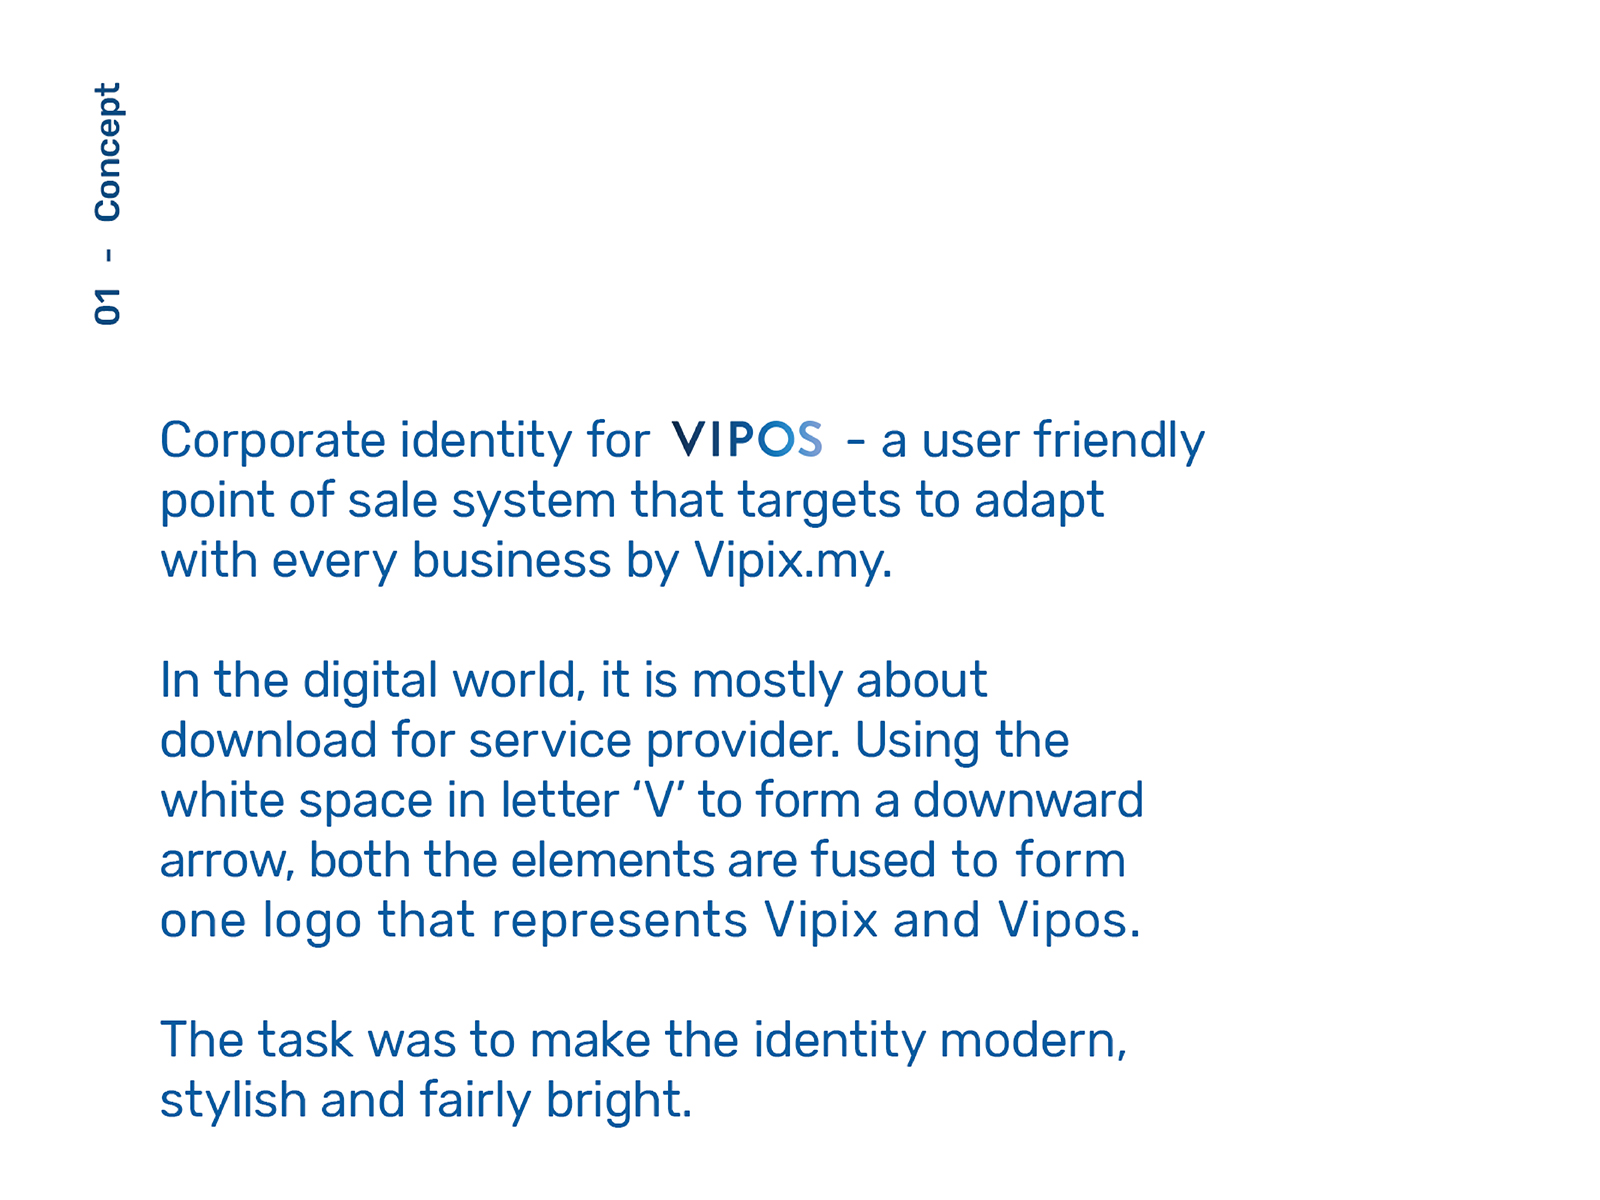 Vipos POS system branding development project description